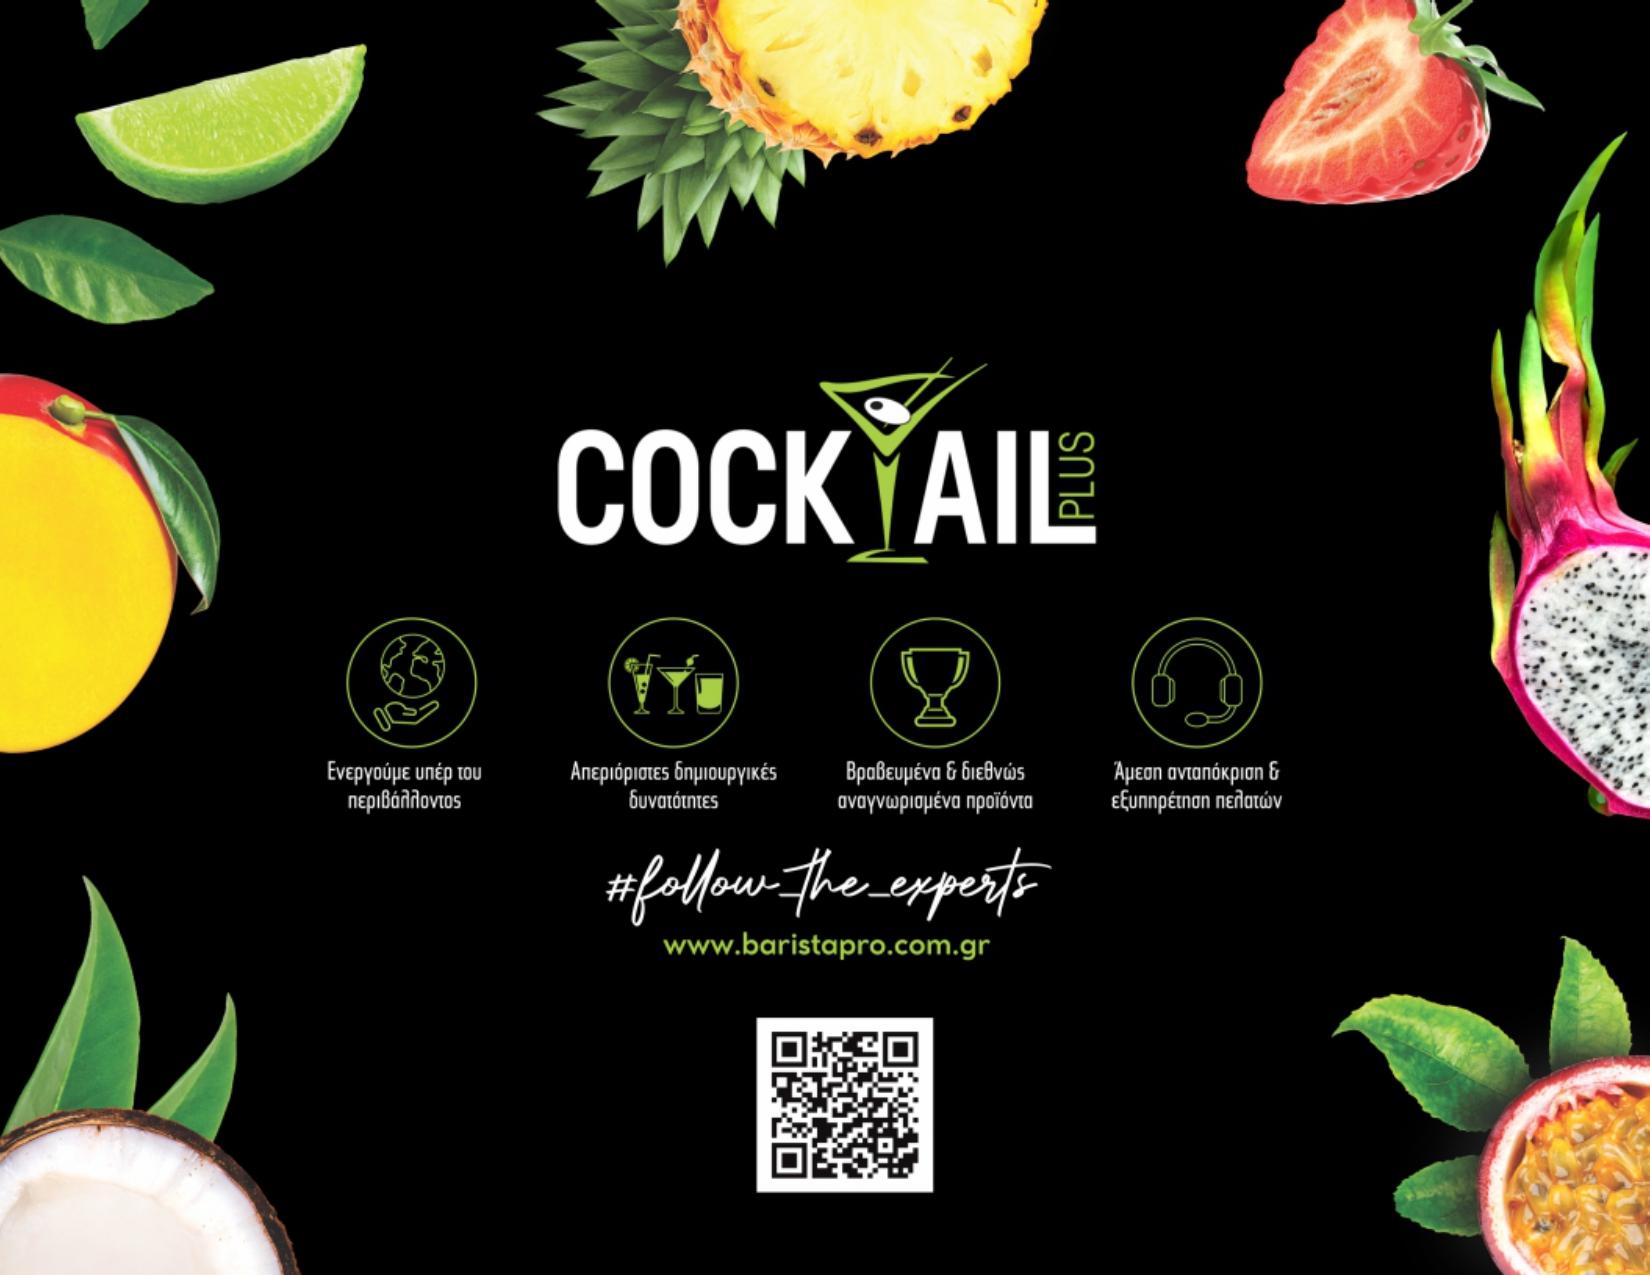 Παρουσίαση Cocktail Plus Premium